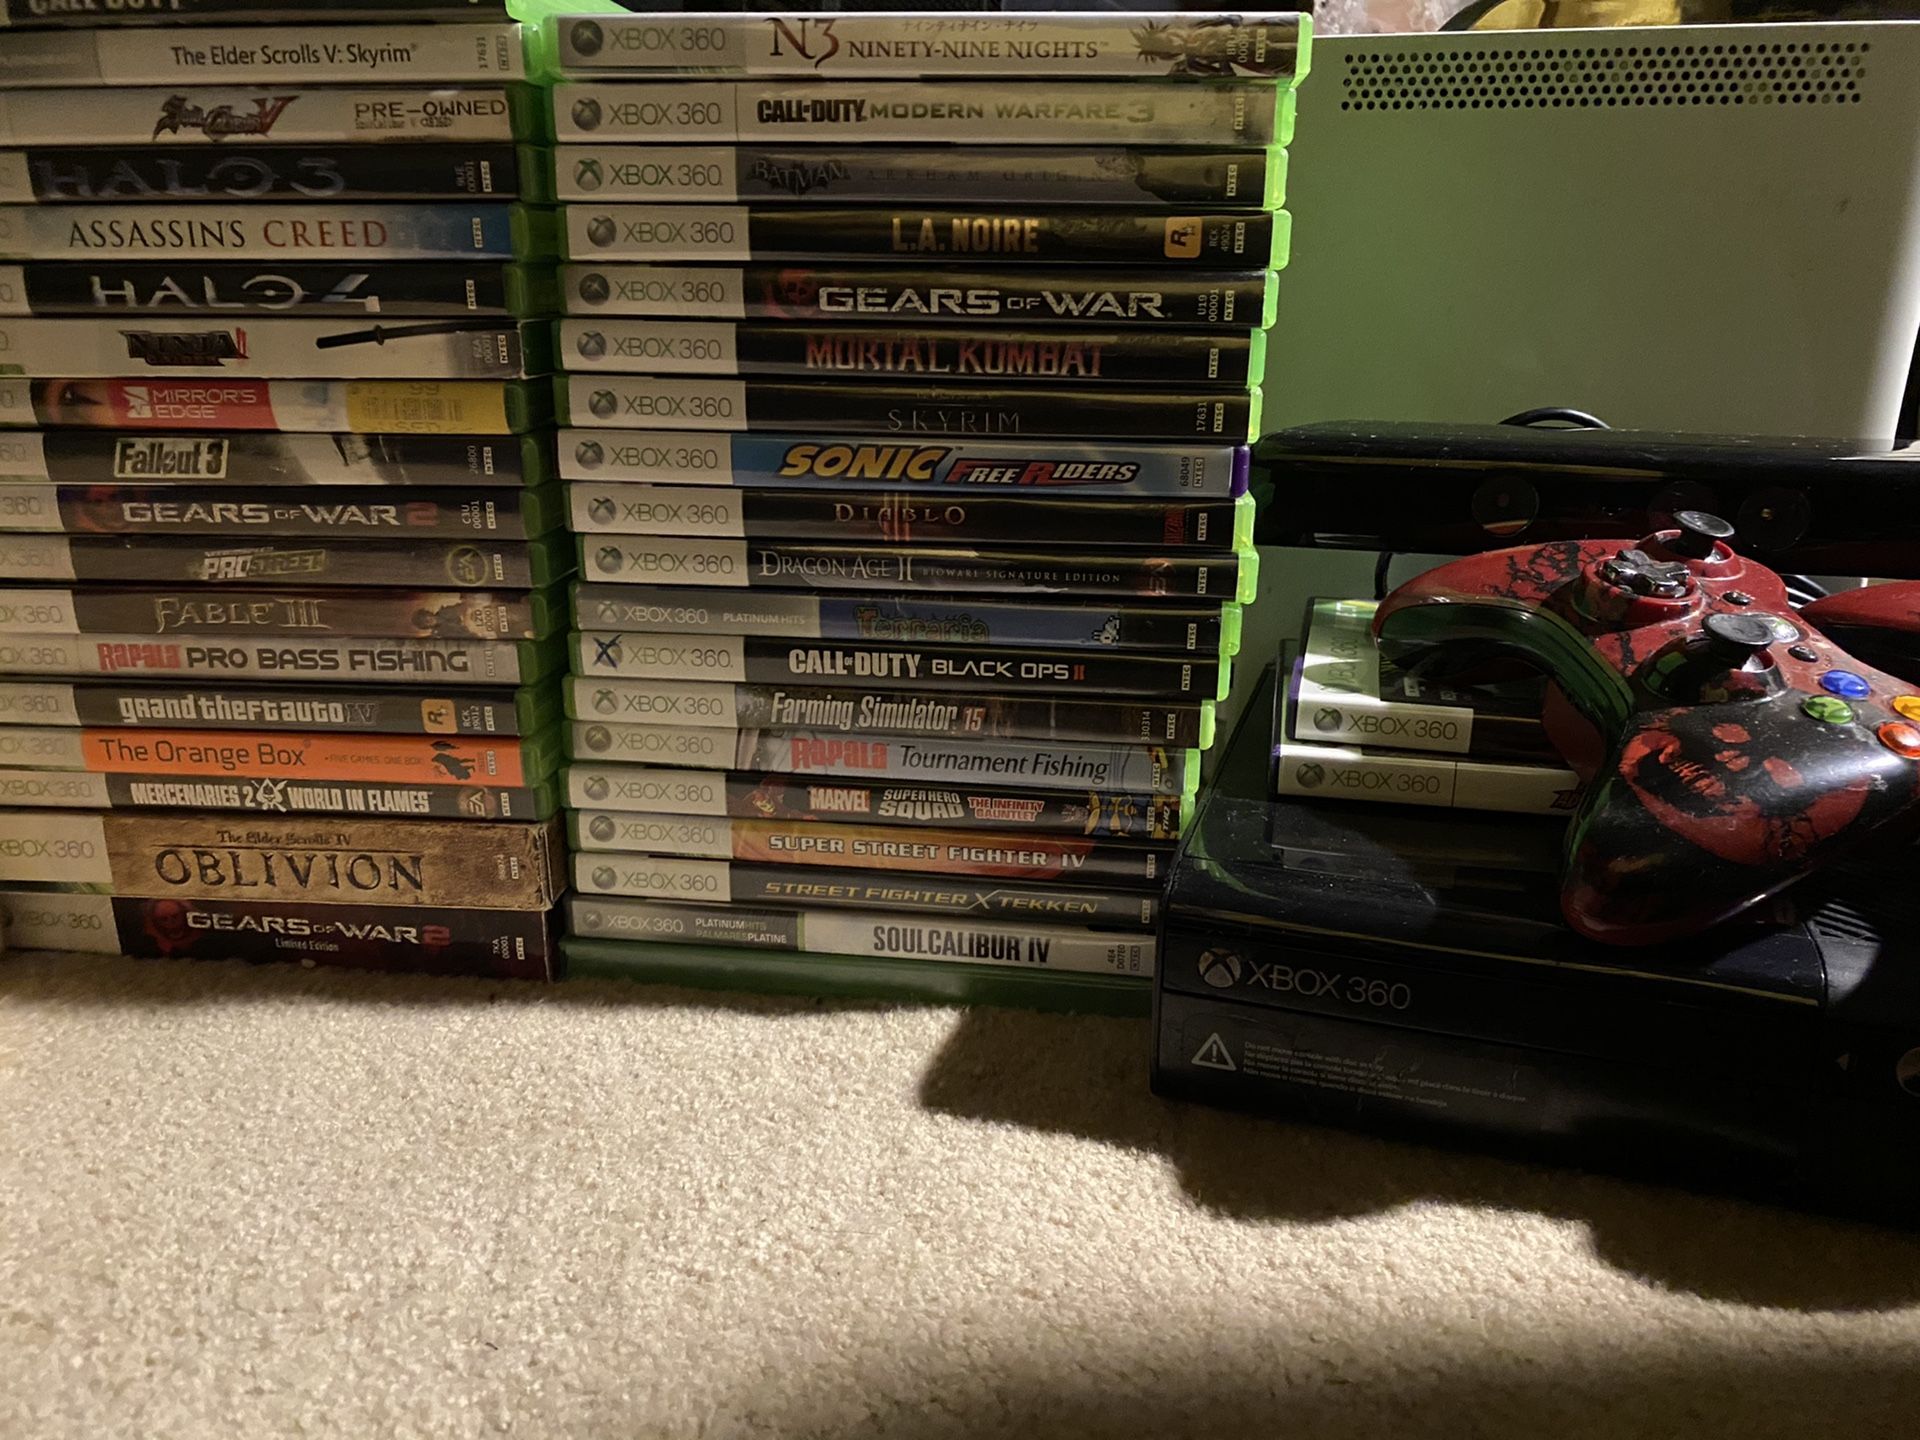 Xbox 360e w/ games and accessories